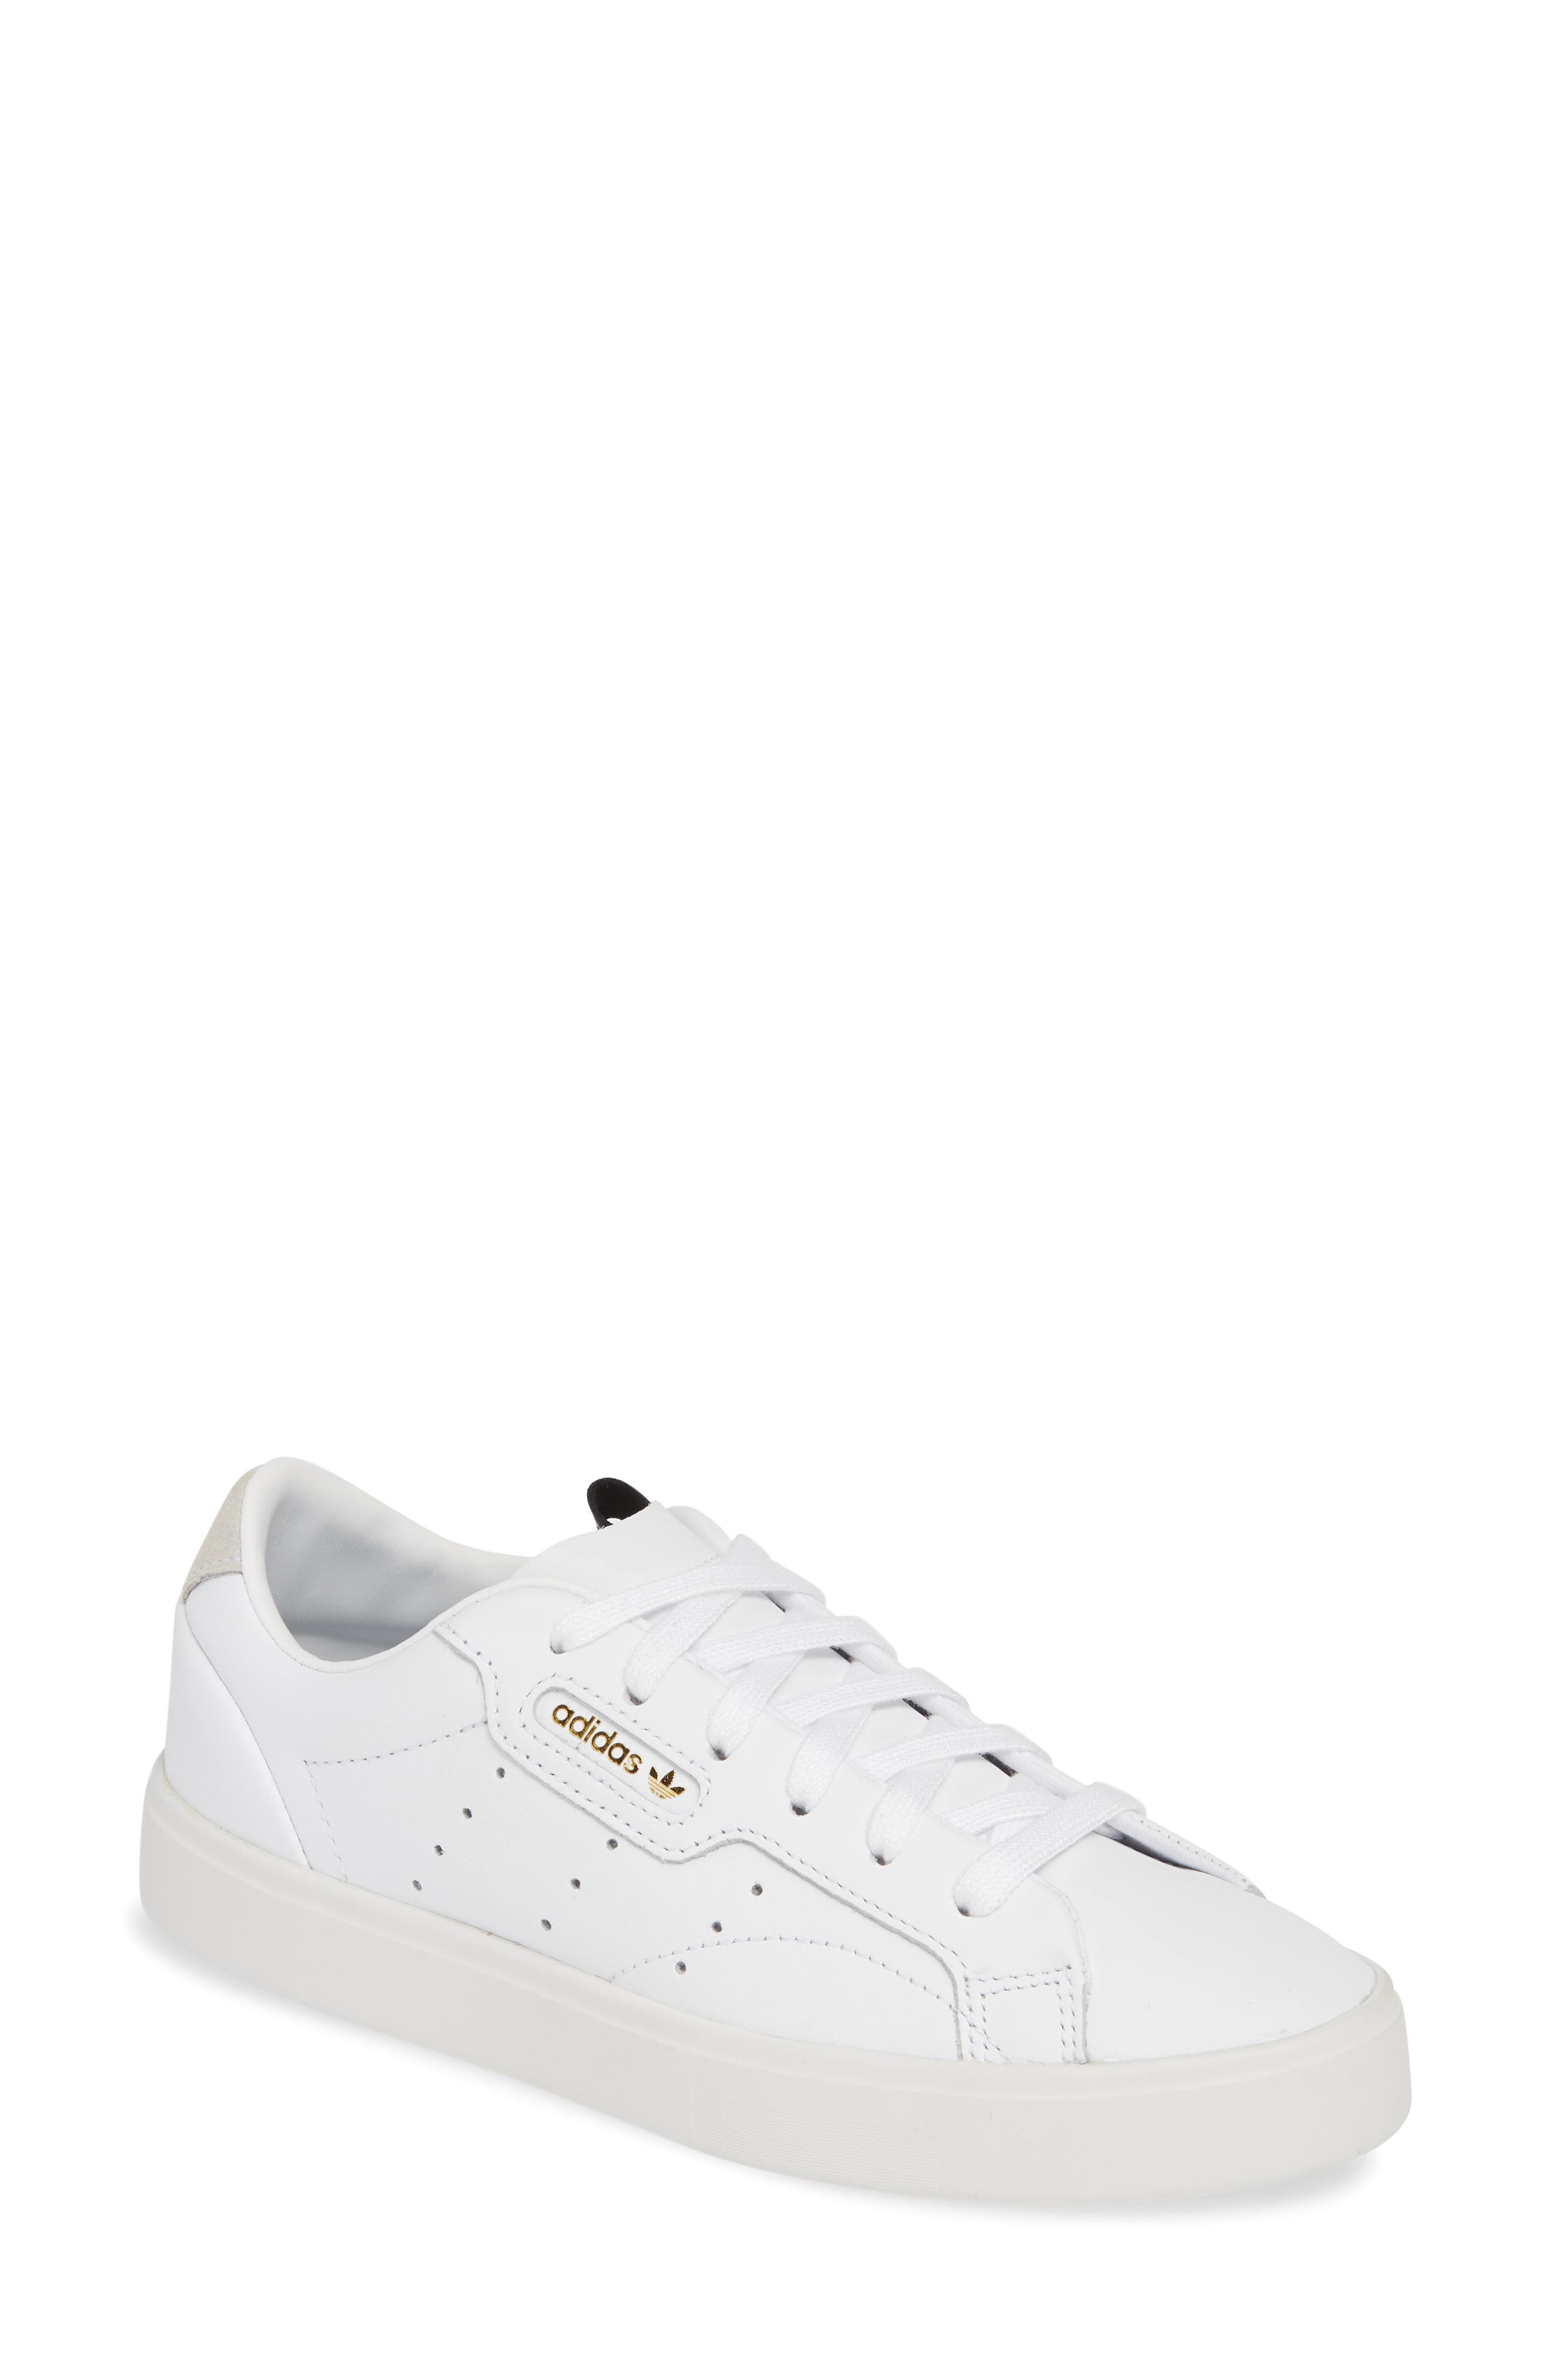 adidas white shoes latest